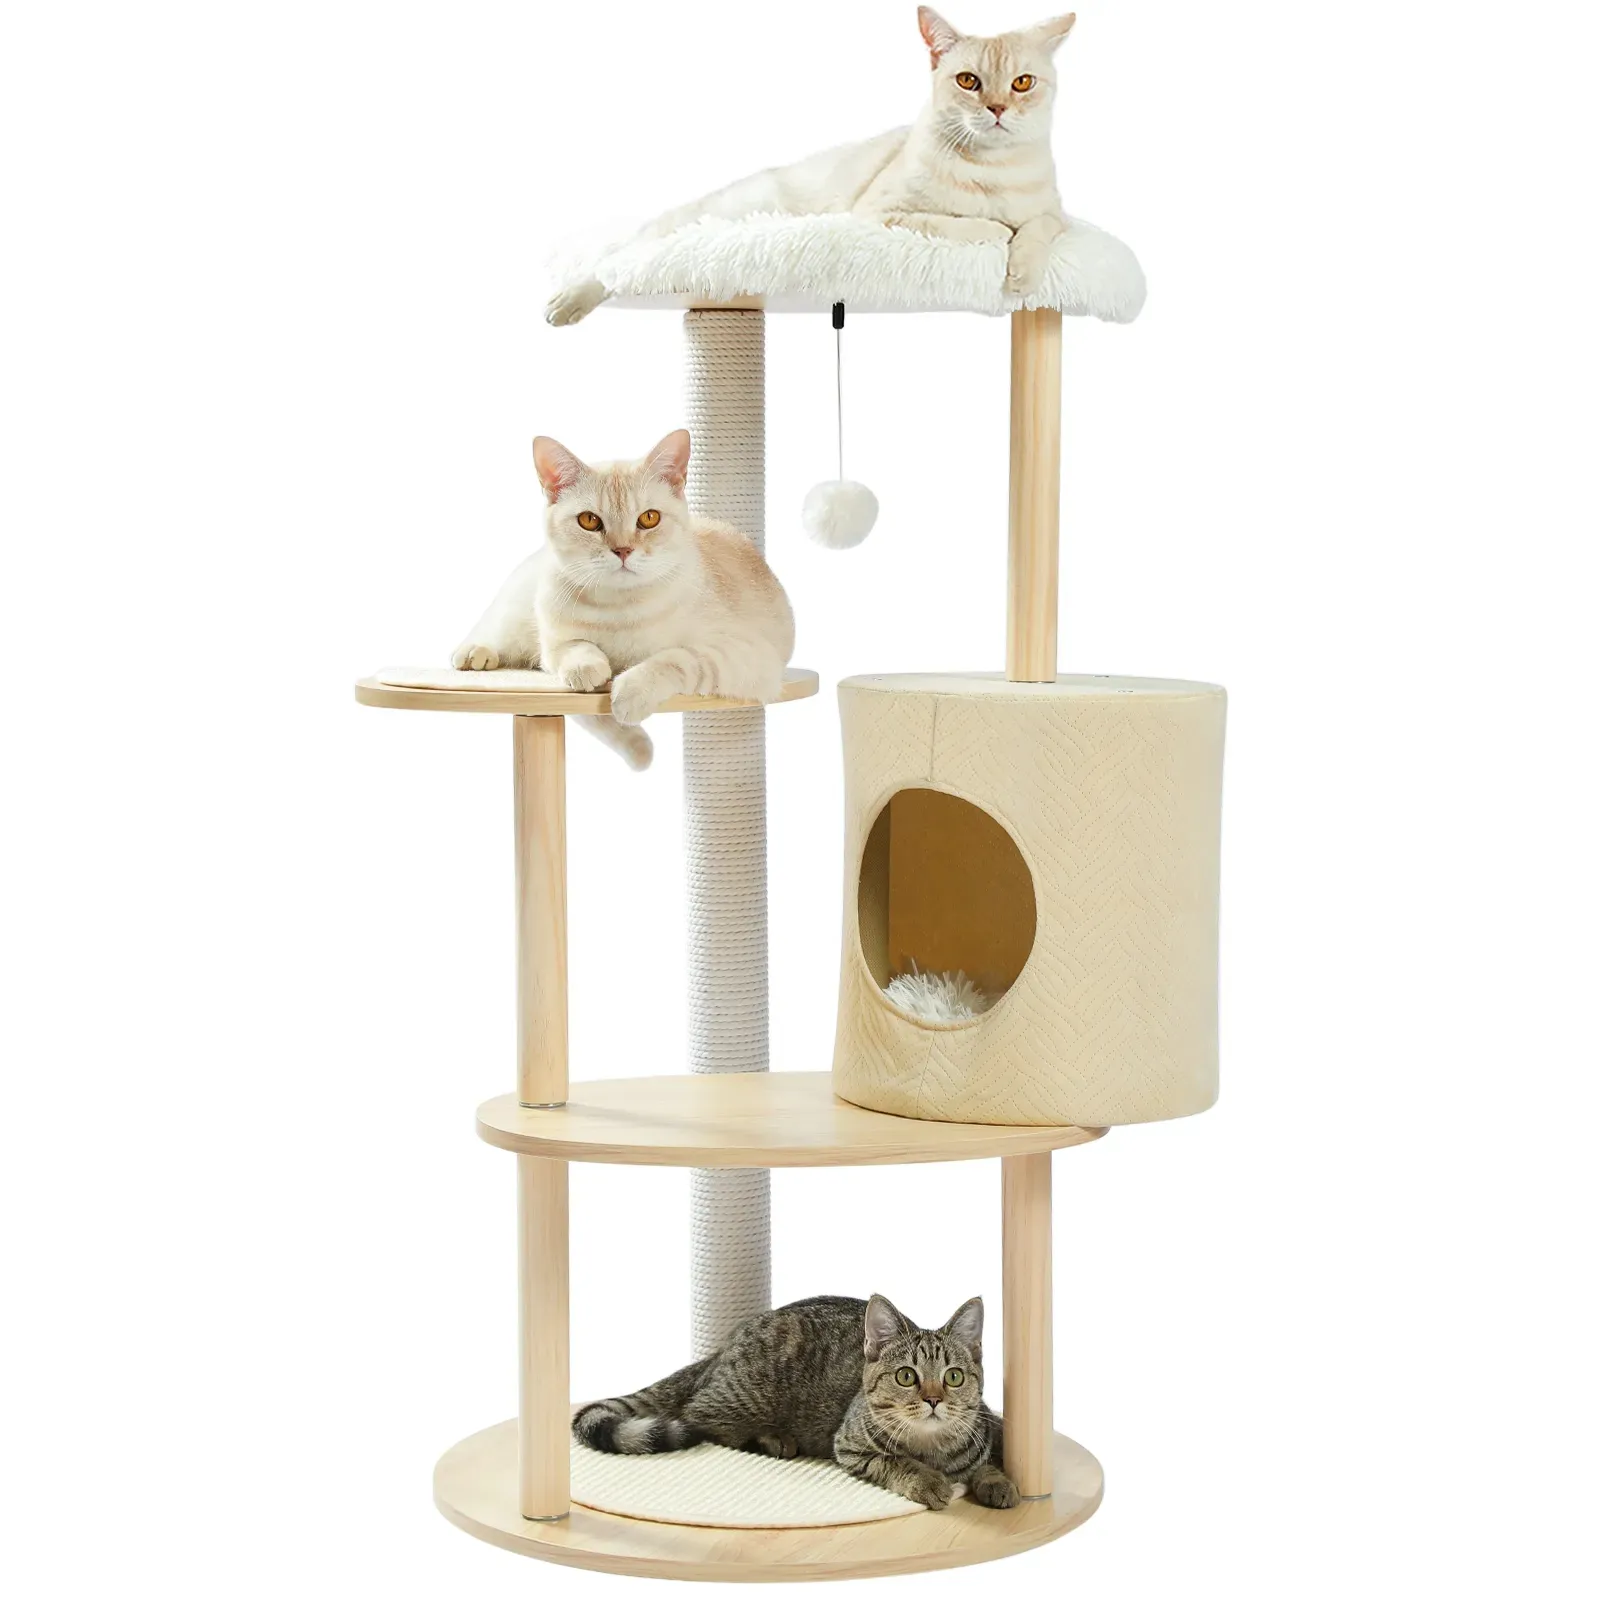 Cadre d'escalade pour chat livraison domestique grand chat grattoir jouet maison arbre meubles pour animaux de compagnie arbre en bois rayé chat saut échelle